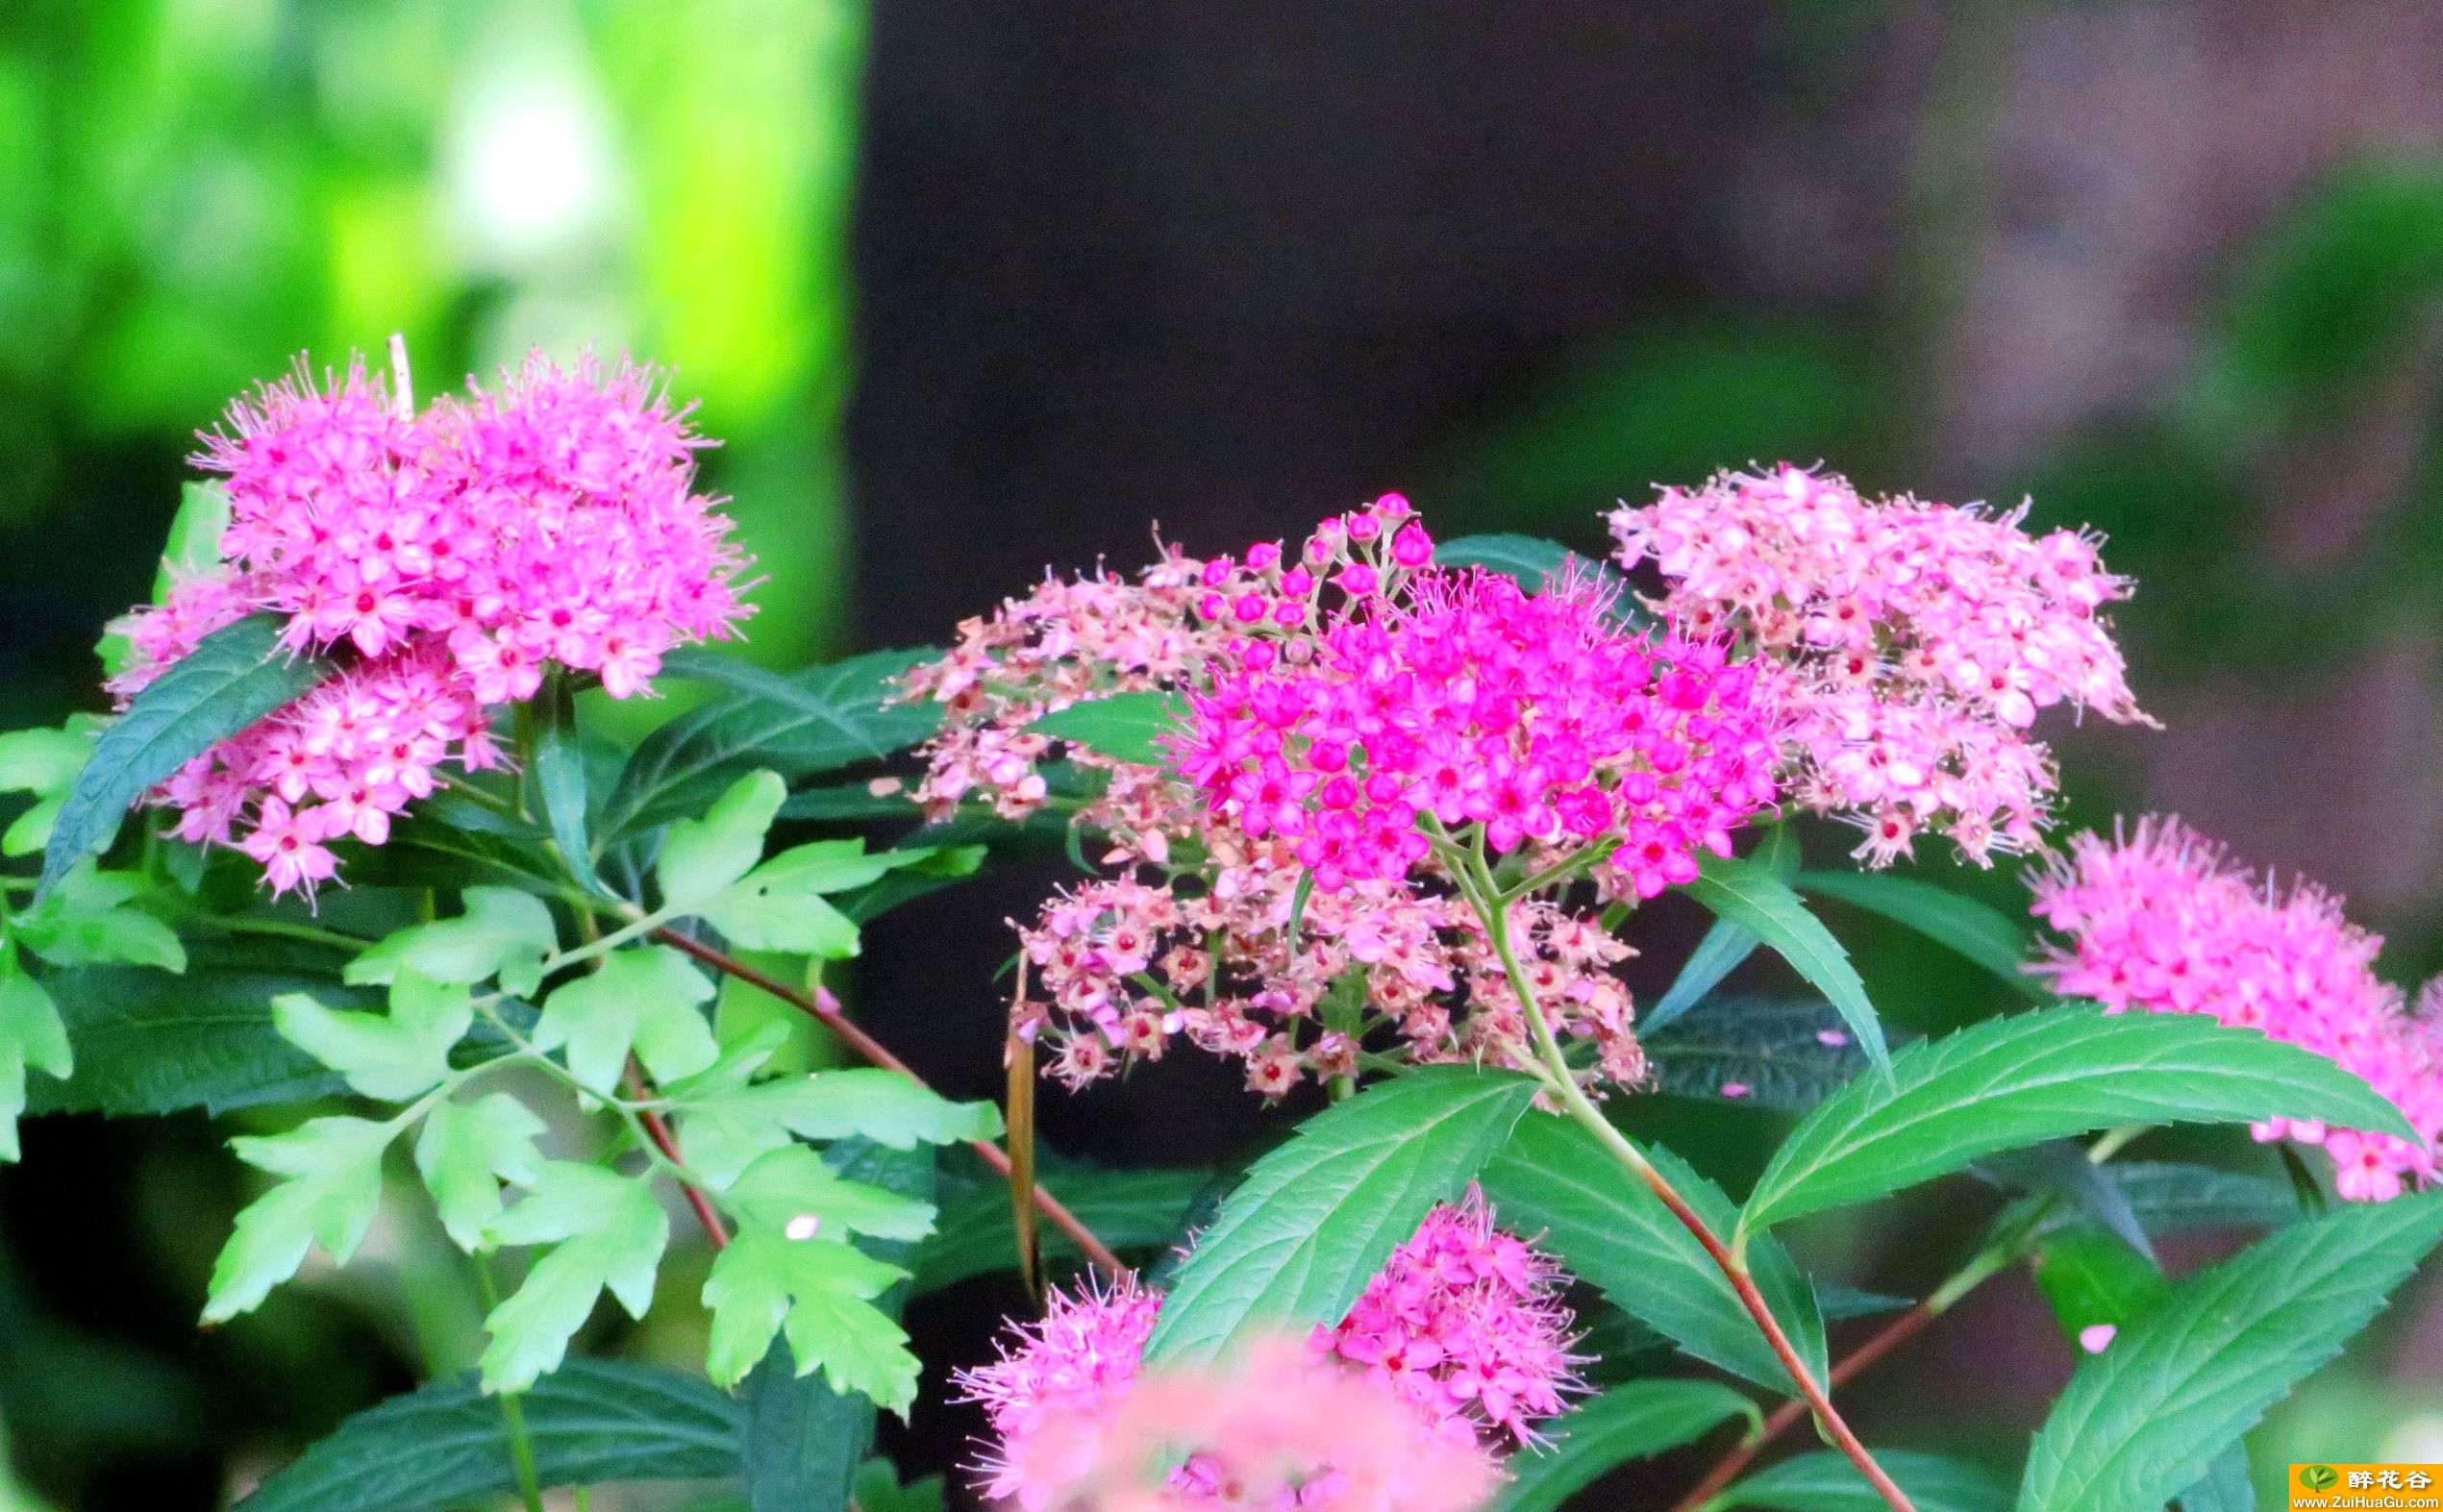 粉花绣线菊是一种非常可爱的小型花卉,开花时节繁花似锦颇为诱人